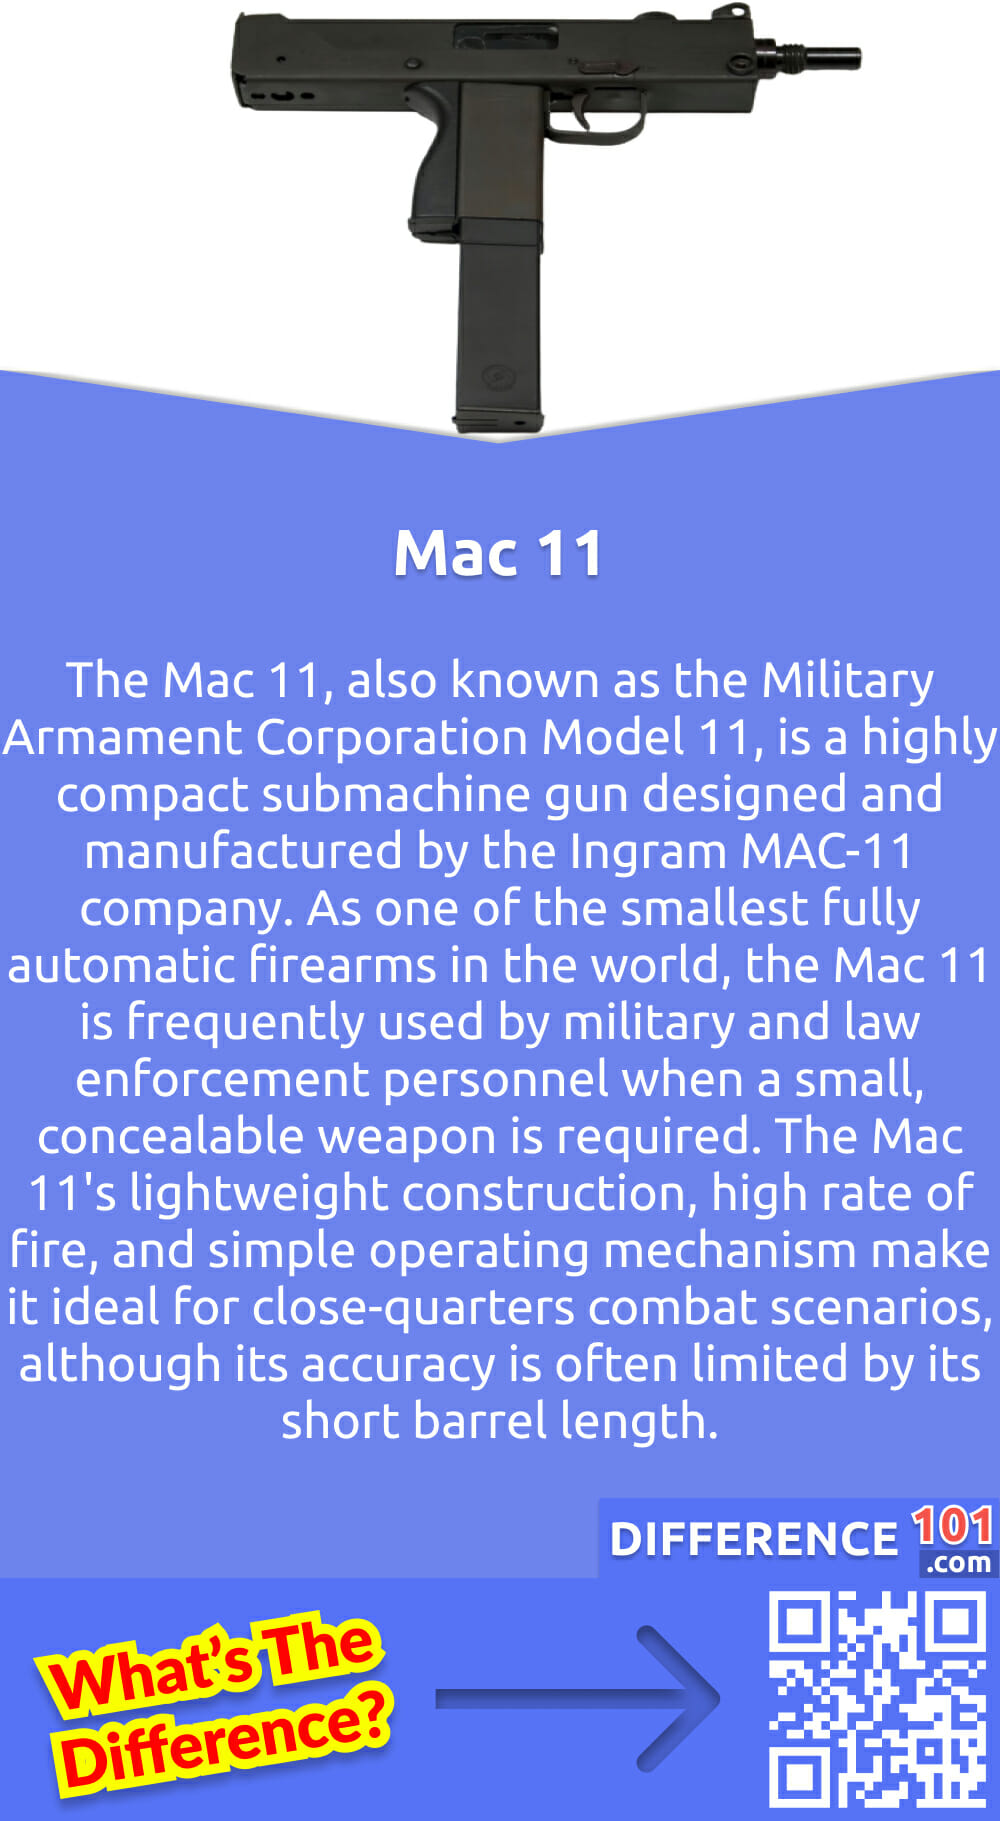 Was ist die Mac 11? Die Mac 11, auch bekannt als Military Armament Corporation Model 11, ist eine sehr kompakte Maschinenpistole, die von der Firma Ingram MAC-11 entwickelt und hergestellt wird. Die Mac 11 ist eine der kleinsten vollautomatischen Feuerwaffen der Welt und wird häufig von Militär- und Strafverfolgungsbeamten eingesetzt, wenn eine kleine, unsichtbare Waffe benötigt wird. Das geringe Gewicht, die hohe Feuerrate und die einfache Bedienung machen die Mac 11 zur idealen Waffe für den Nahkampf, auch wenn die Genauigkeit aufgrund der kurzen Lauflänge oft eingeschränkt ist. Trotz einiger Kontroversen über die Kapazität und den möglichen illegalen Einsatz ist die Mac 11 nach wie vor eine beliebte Wahl für alle, die eine gut versteckte und vielseitige Waffe benötigen.